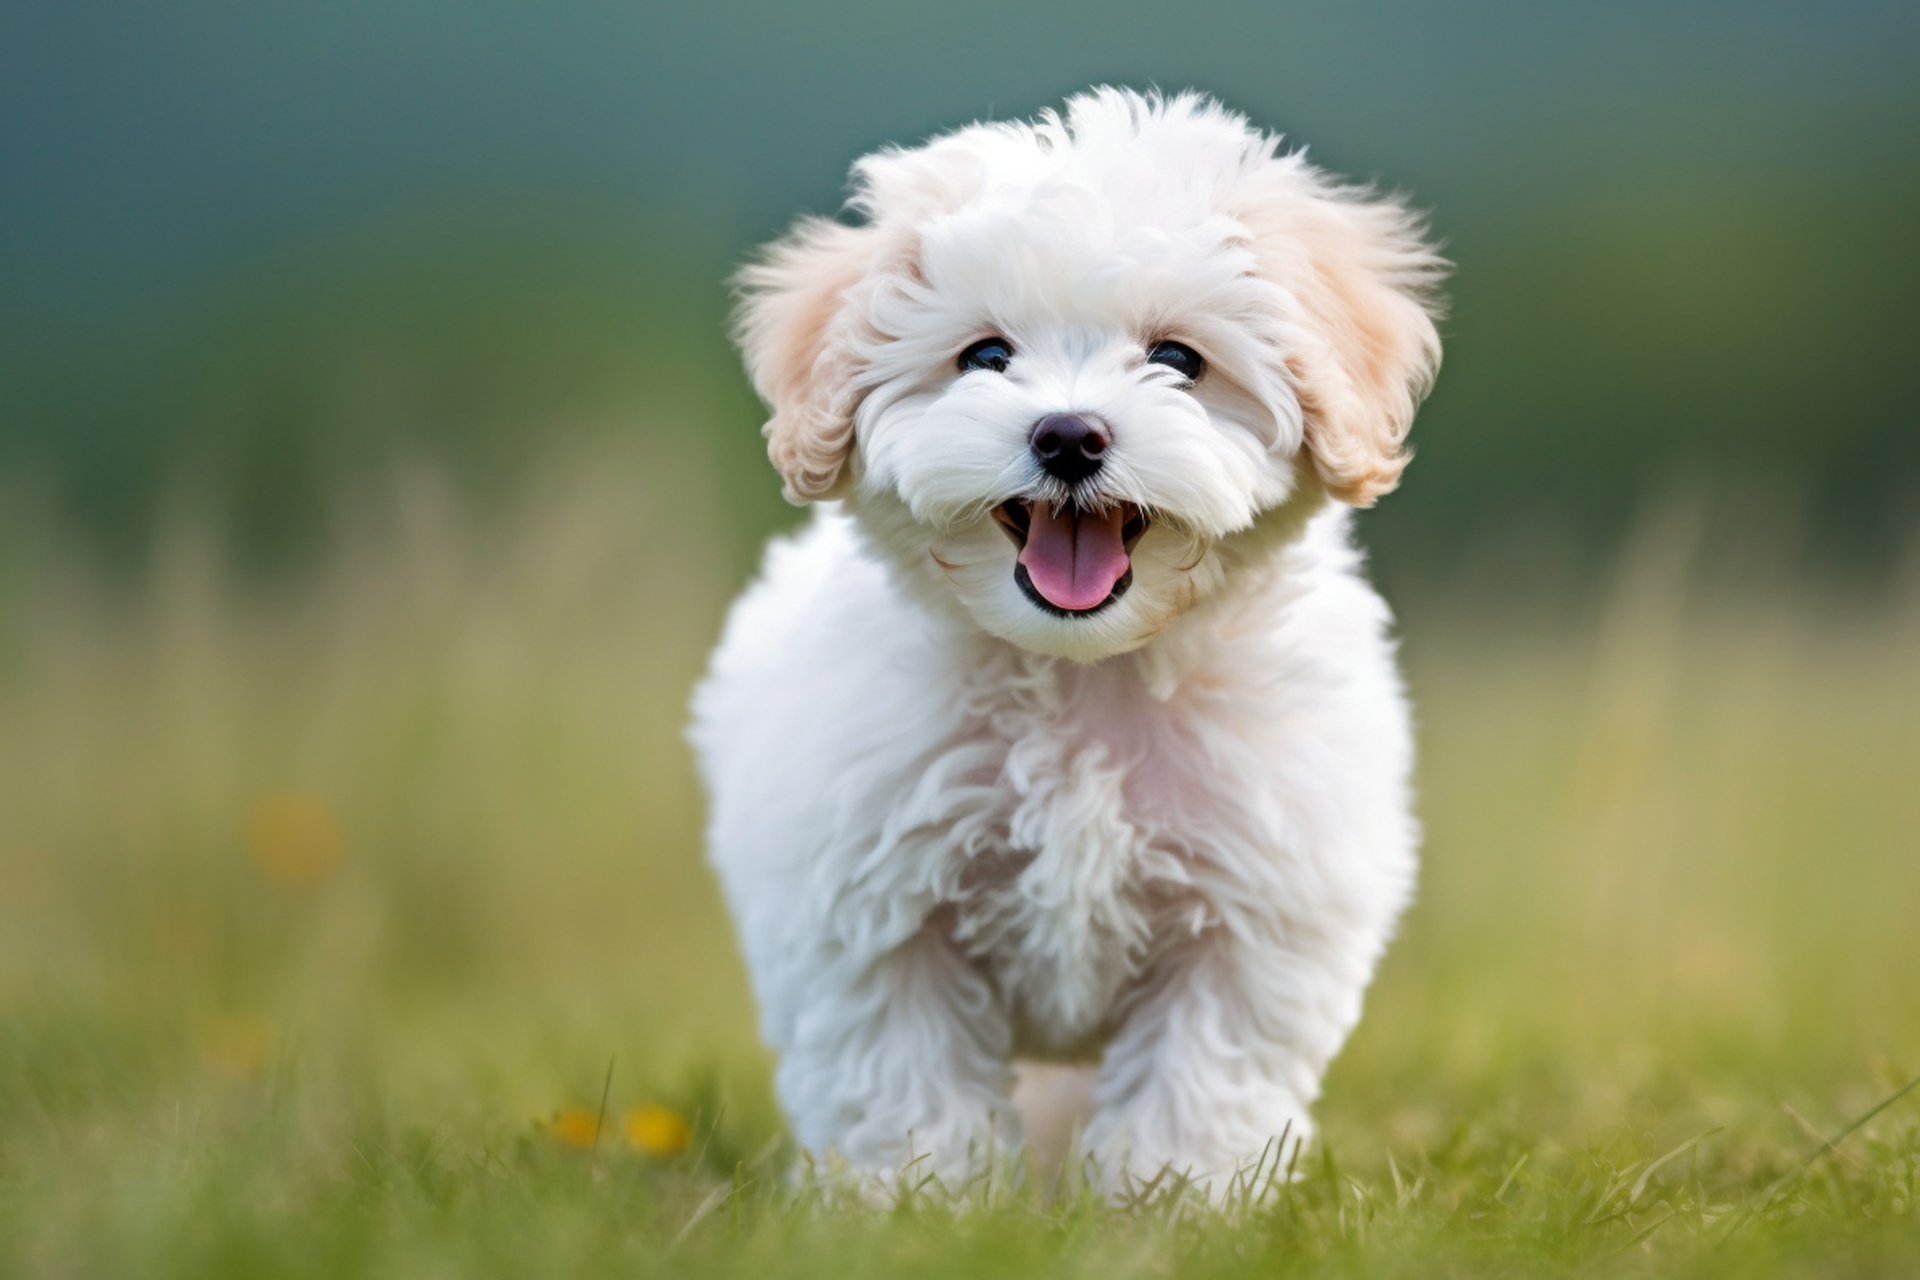 White Poochon puppy in grass